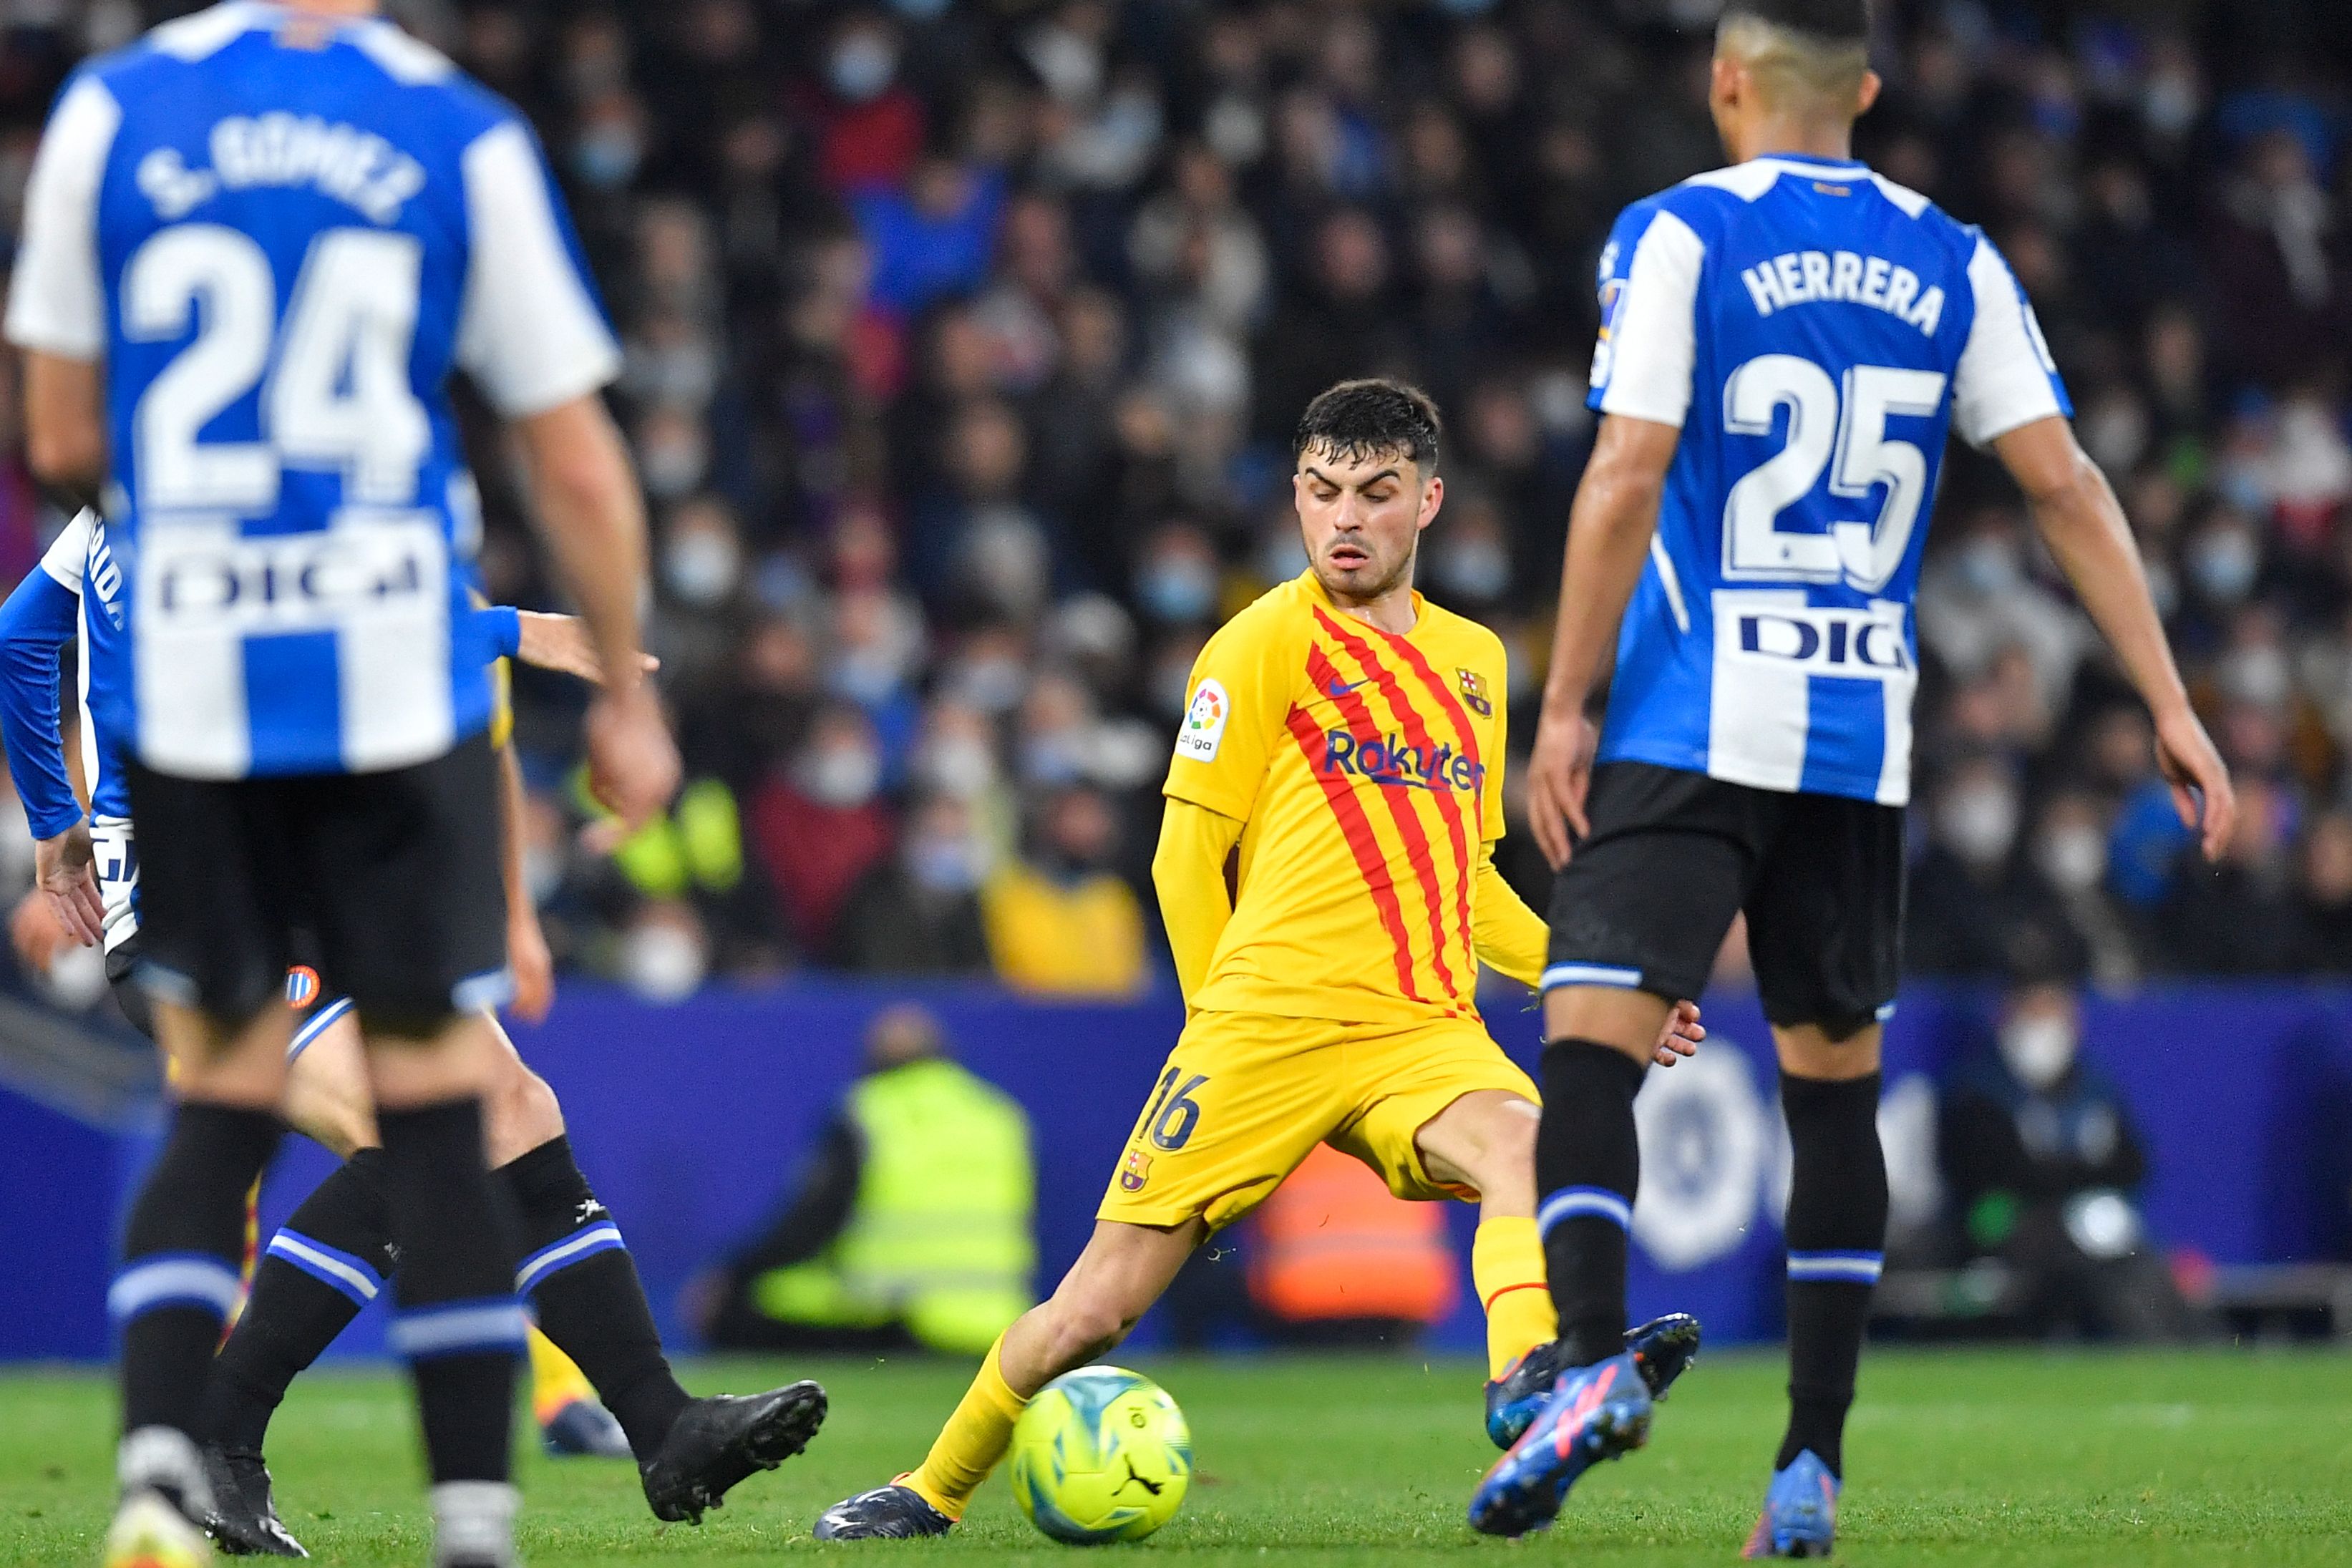 Liga : Le Barça égalise dans le temps additionnel face à l'Espanyol (2-2)